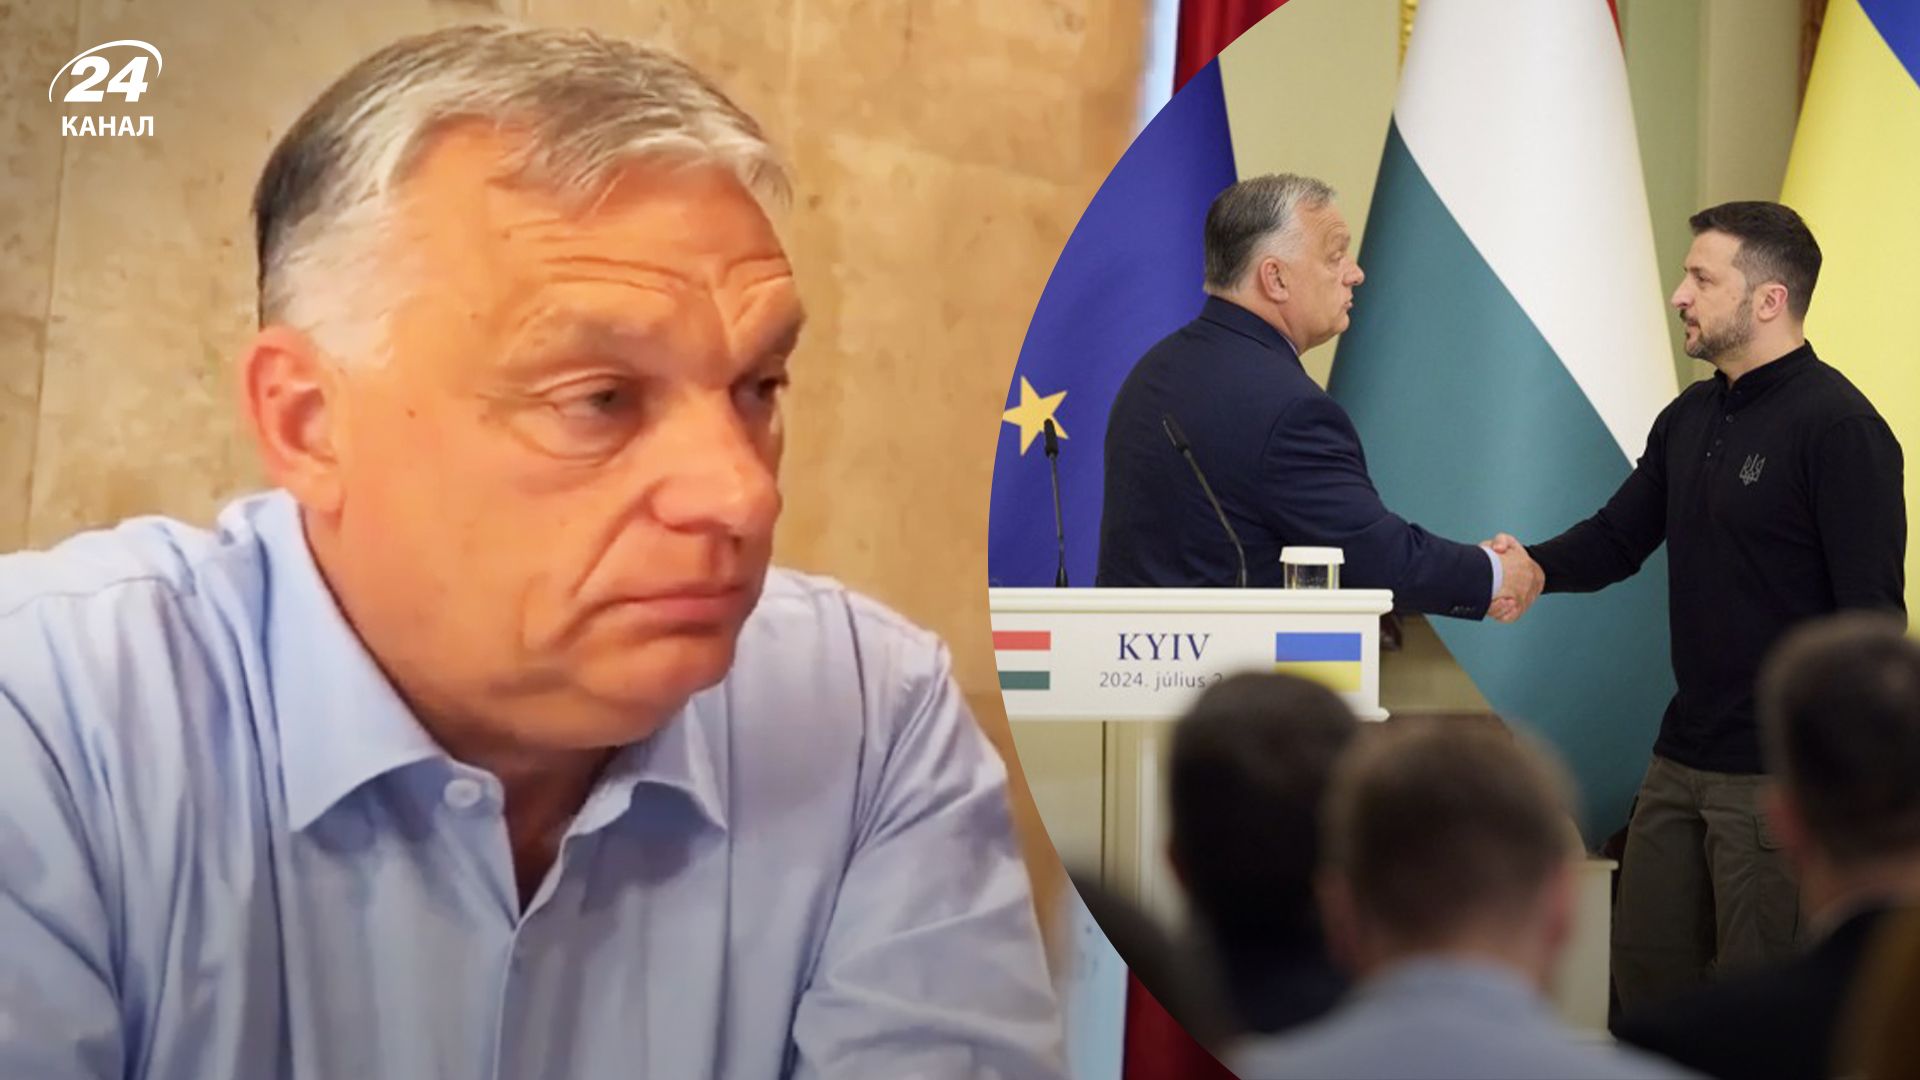 Що сказав Орбан про зустріч із Зеленським у Києві 2 липня